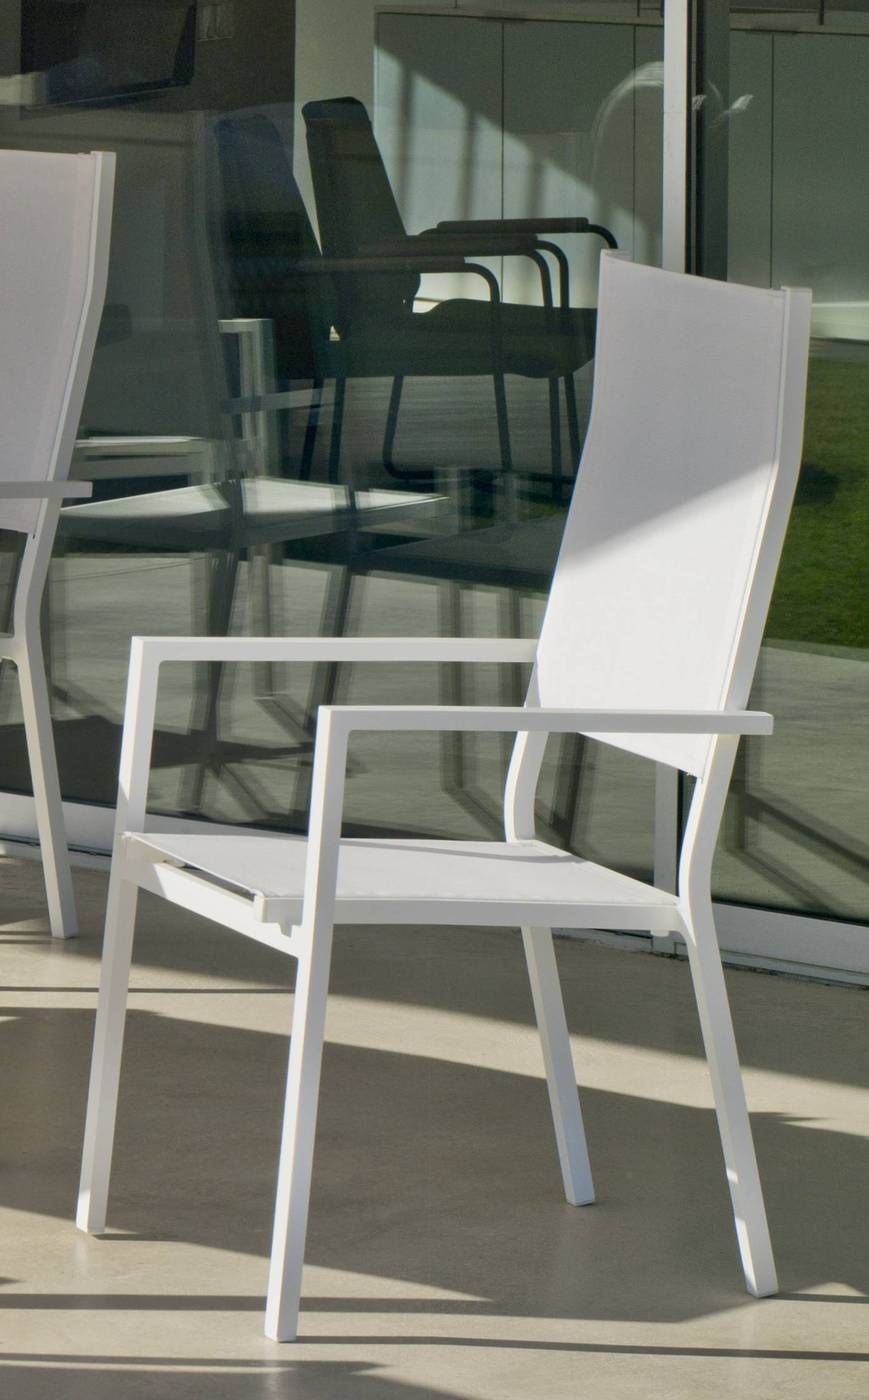 Set Aluminio Singapur-Janeiro 215-6 - Conjunto de aluminio: mesa extensible con tablero HPL + 6 sillones altos de textilen. Disponible en color blanco o antracita.